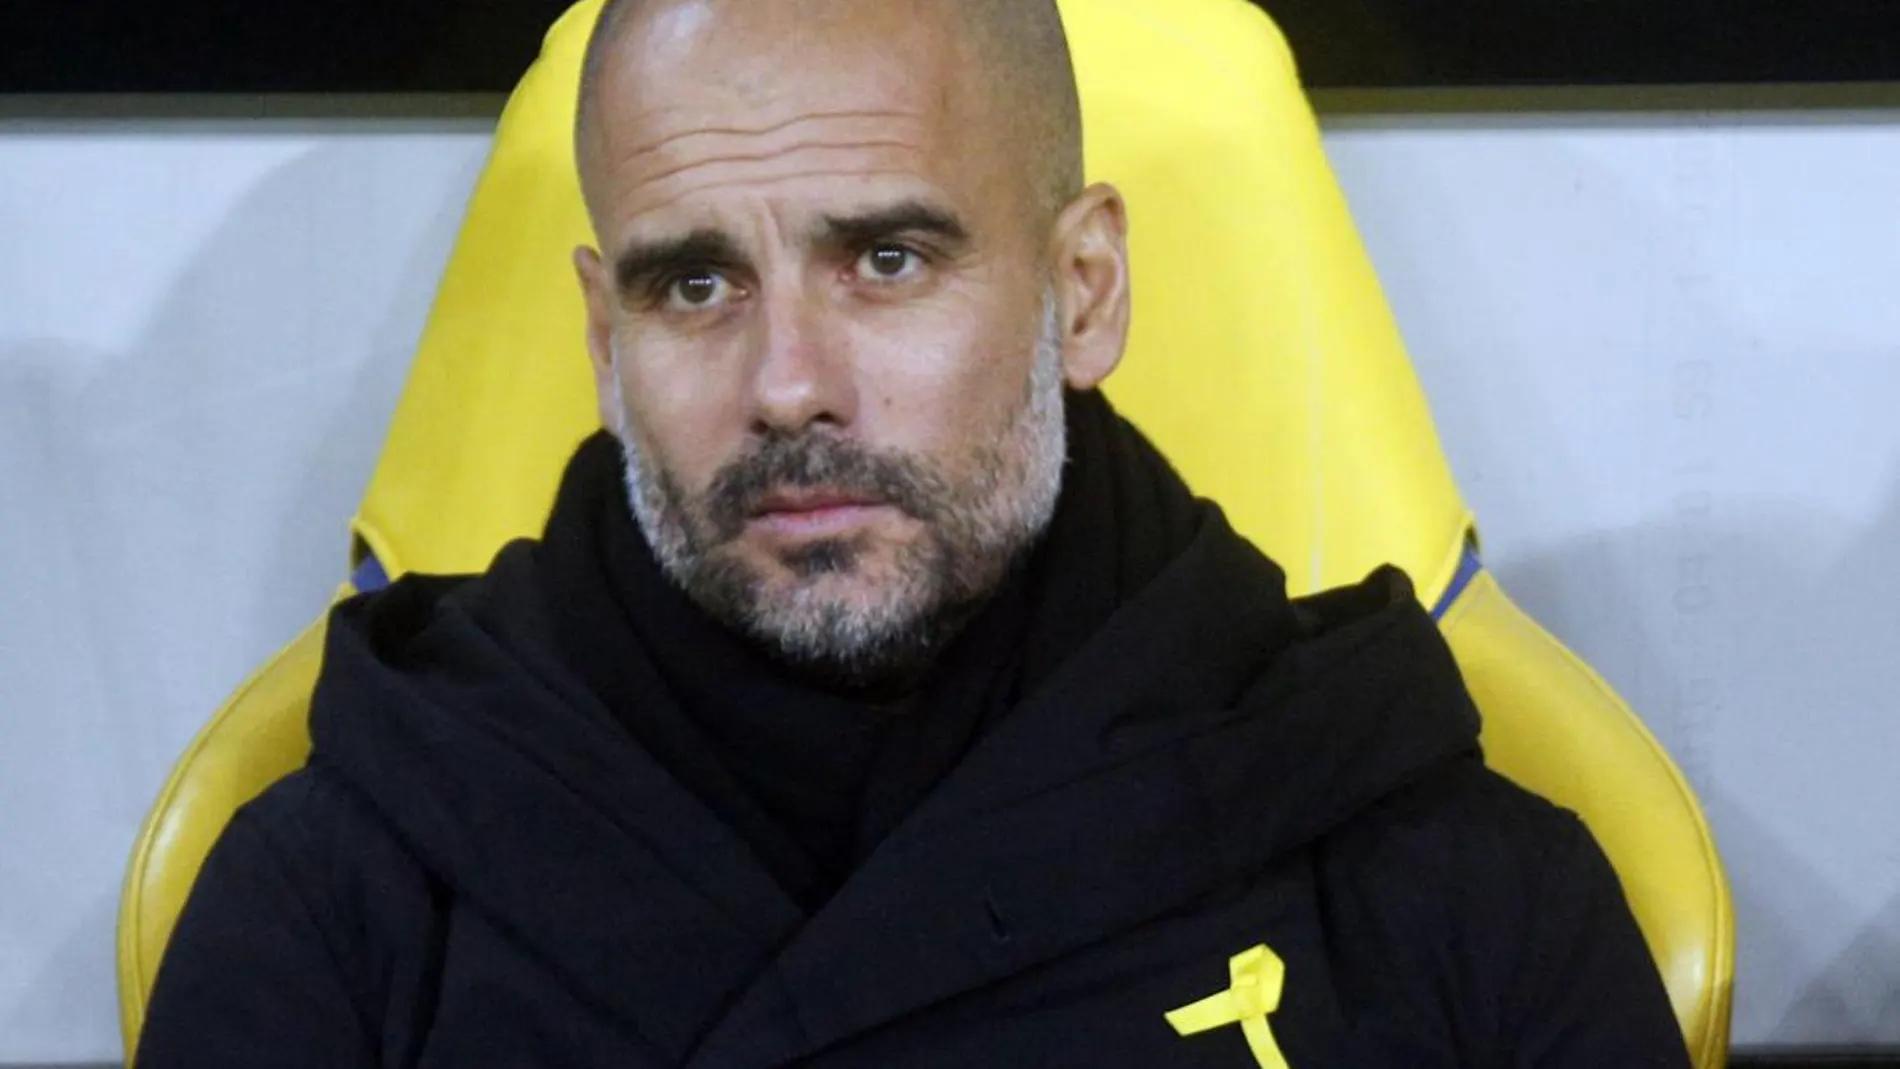 Pep Guardiola en el banquillo durante un partido de Champions League con el lazo amarillo visible sobre su pecho.